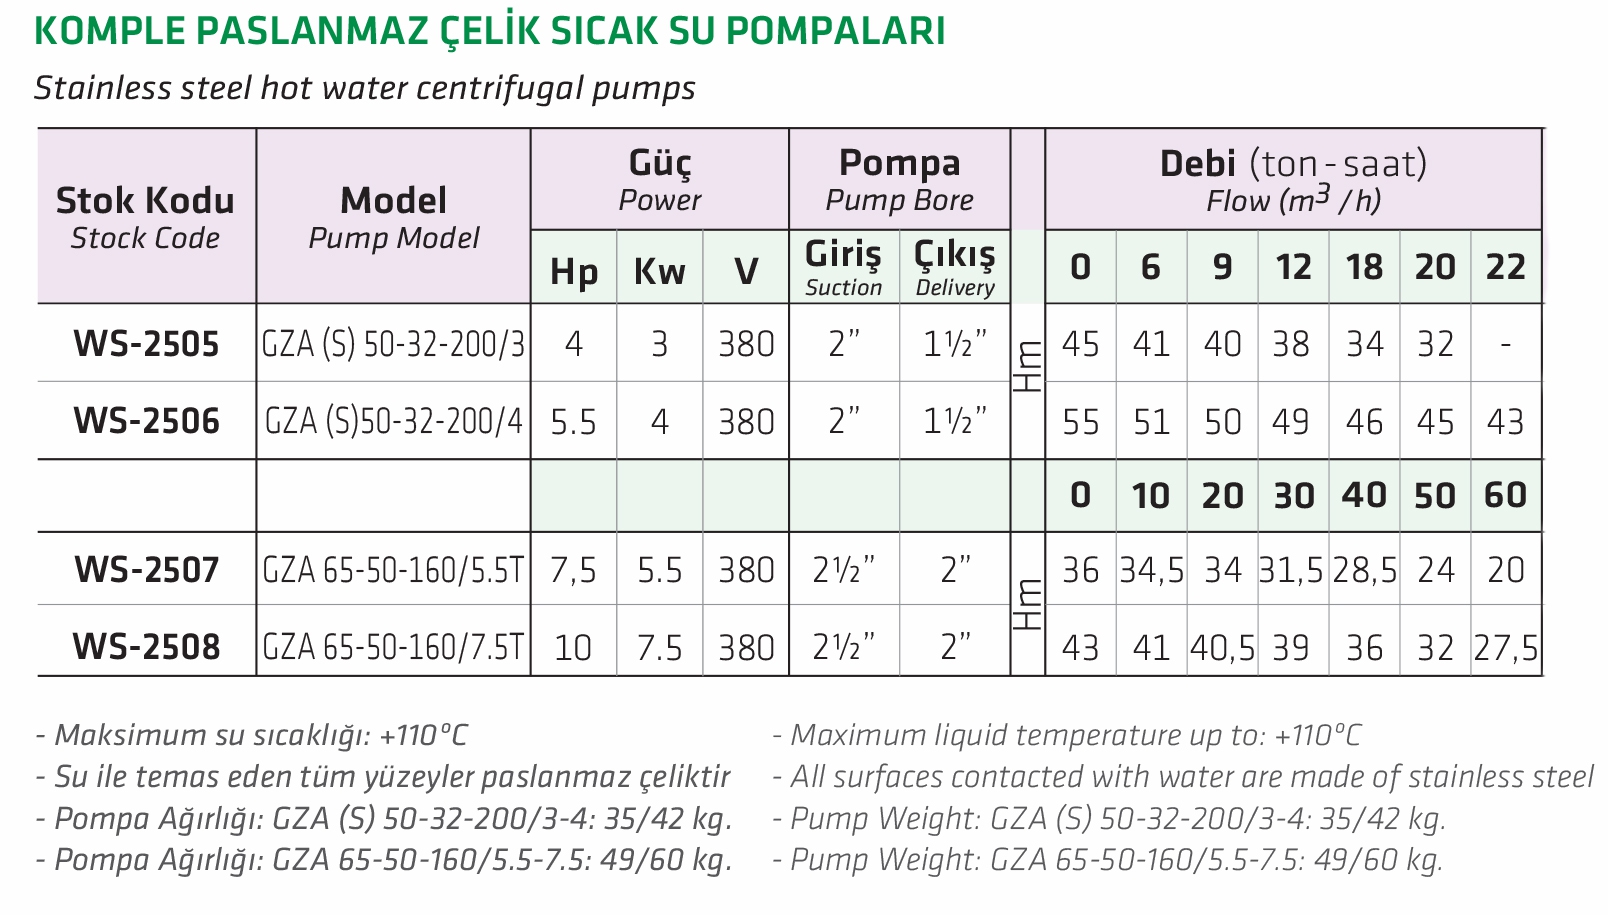 Water Sound GZA 65-50-160/5.5T 7.5 HP Komple Paslanmaz Çelik Sıcak Su Pompa 